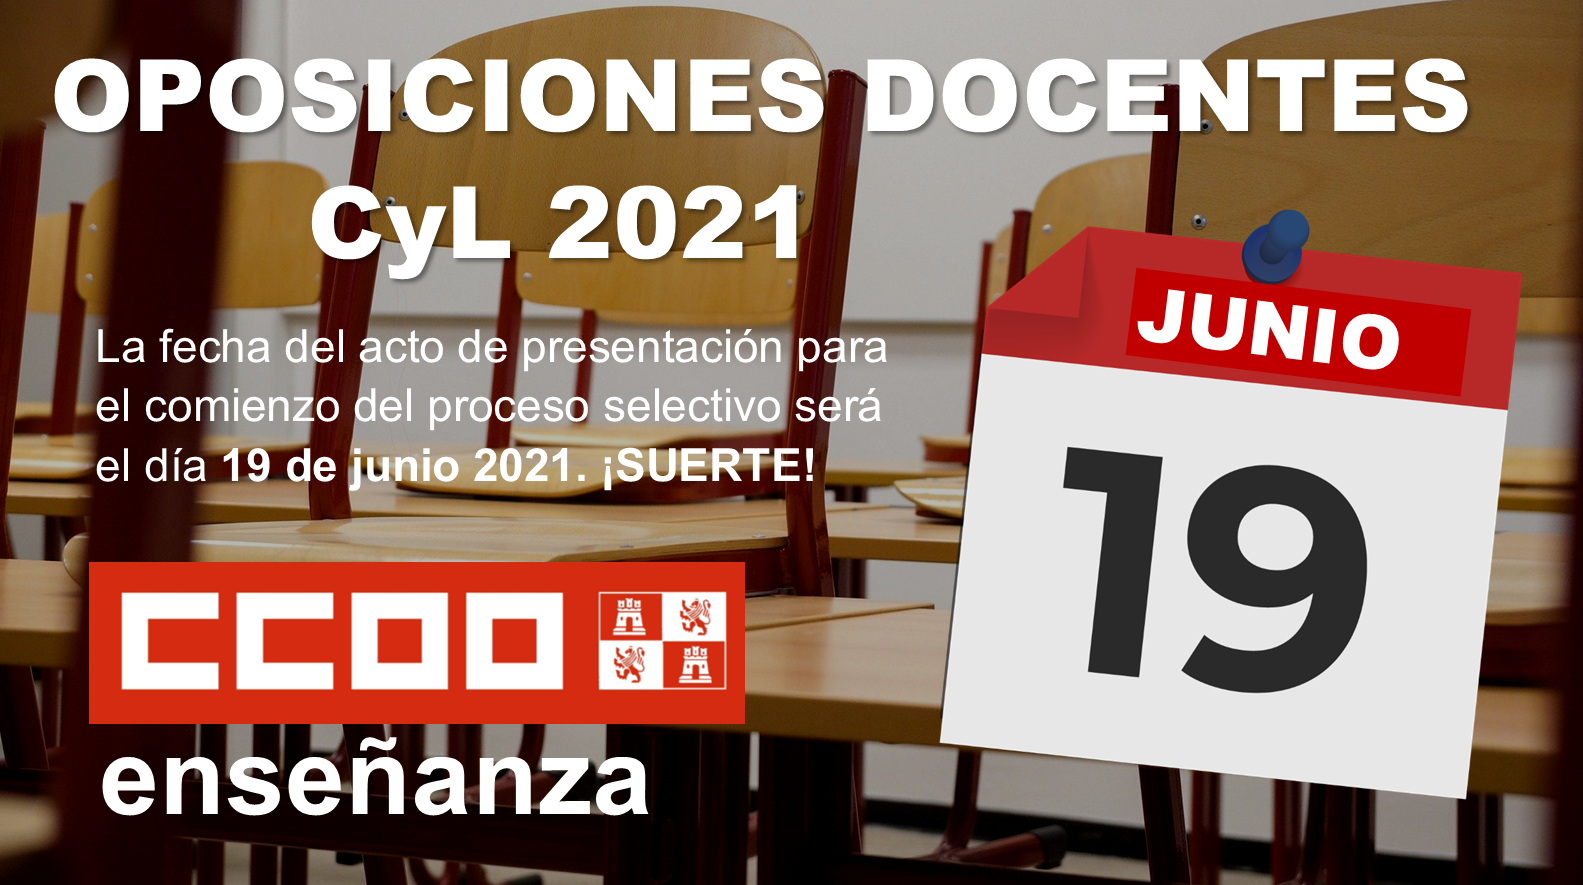 Oposiciones docentes 2020 CyL. Fecha de inicio de las pruebas  Sábado 19 de junio